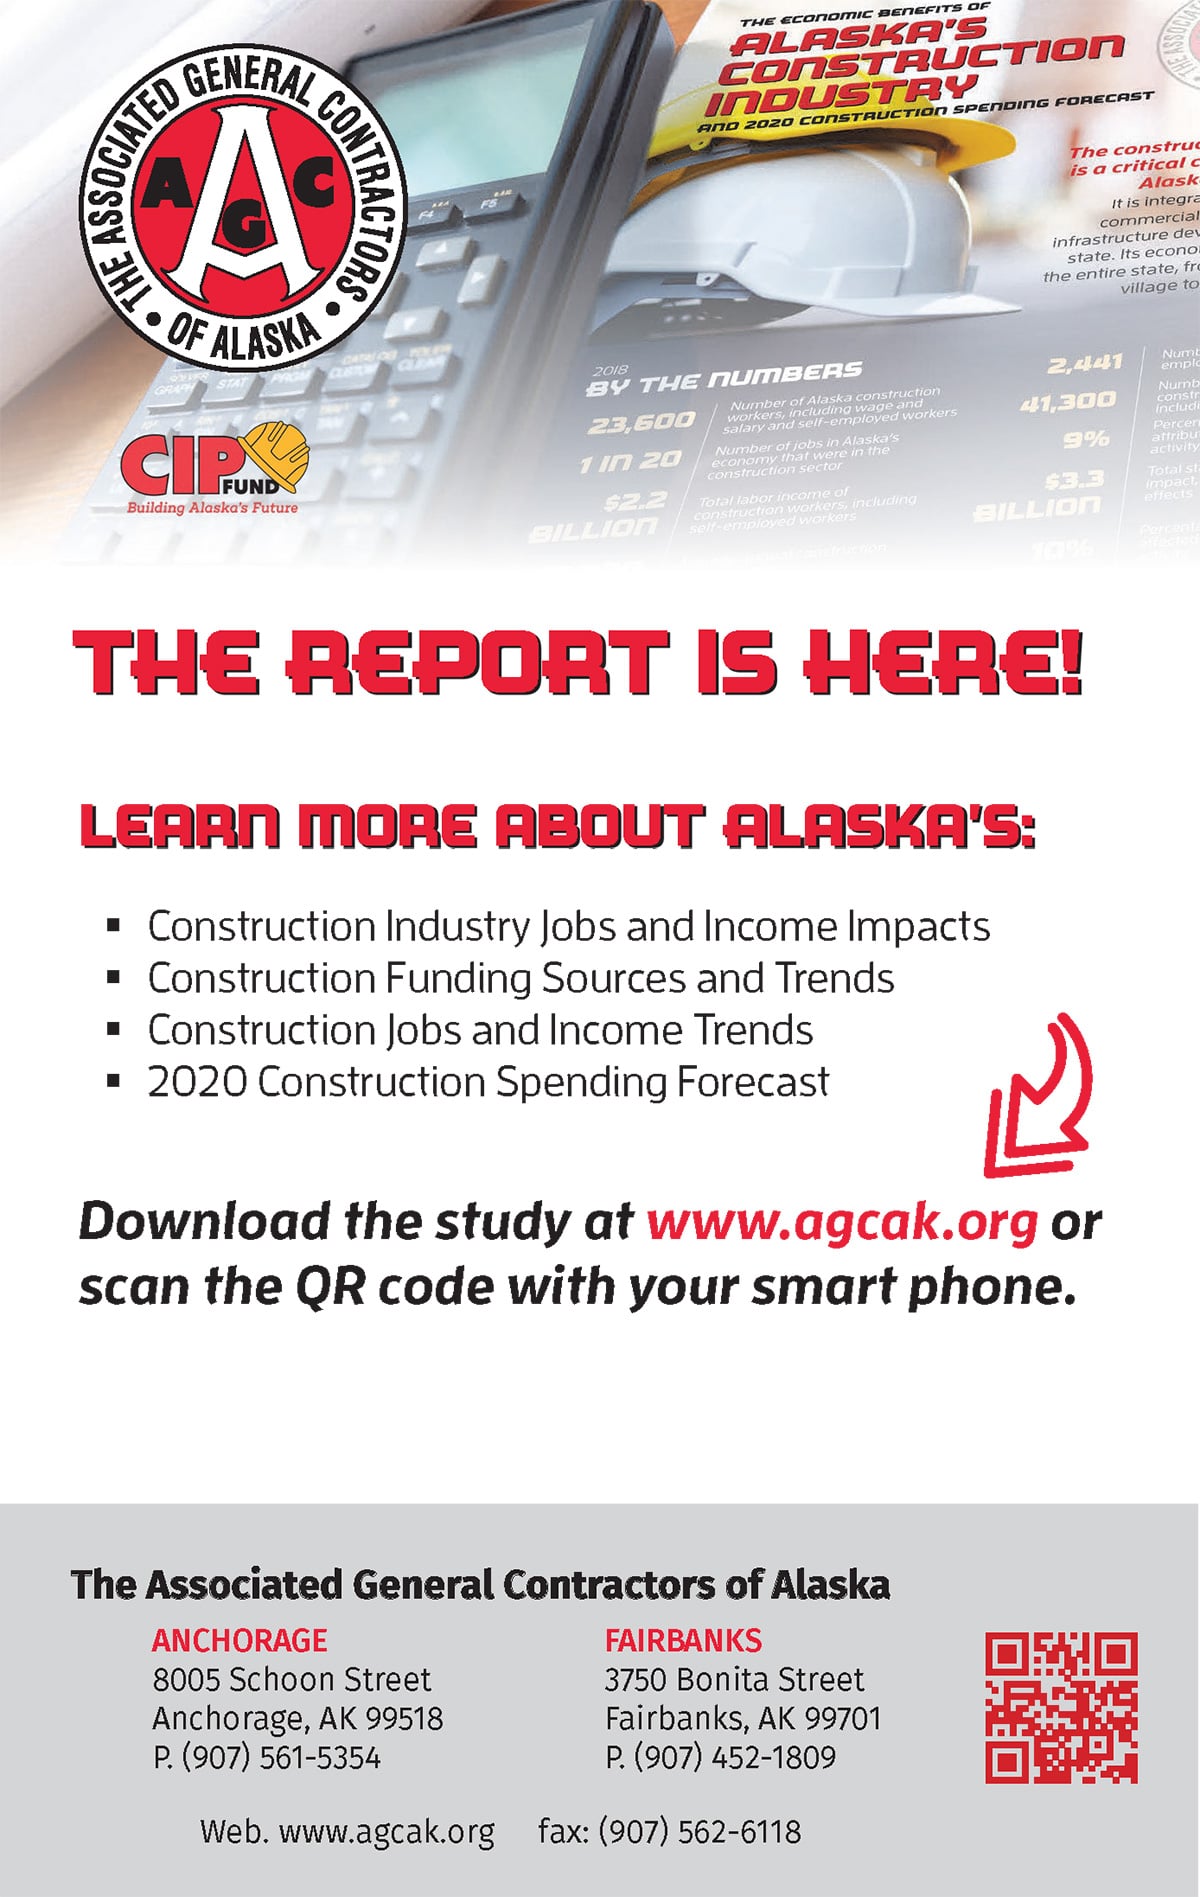 The Associated General Contractors of Alaska